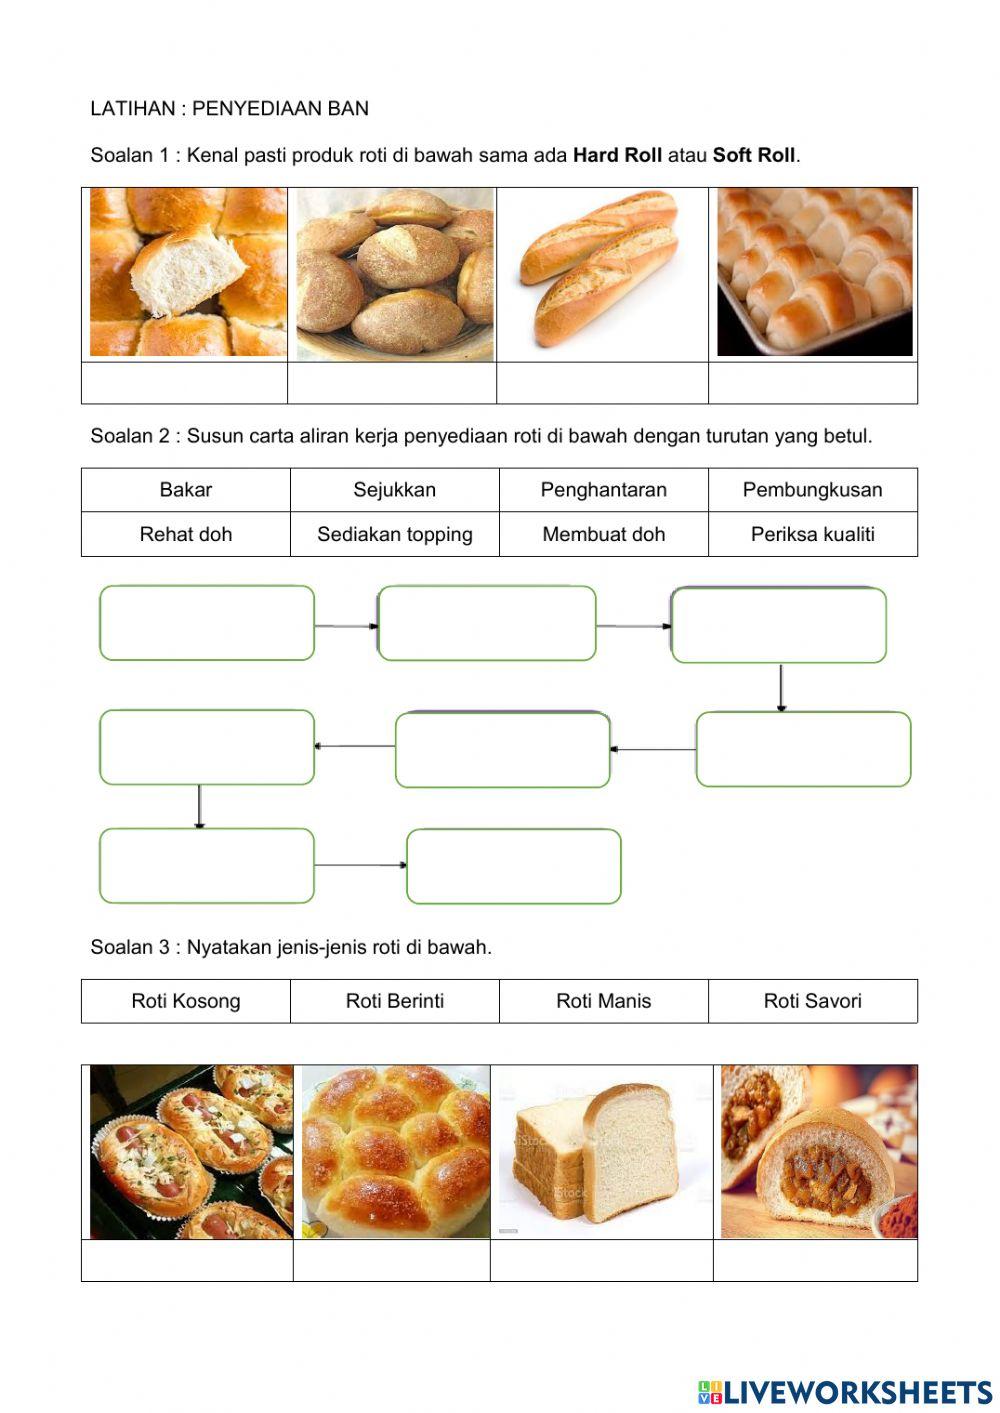 Jenis-jenis Roti